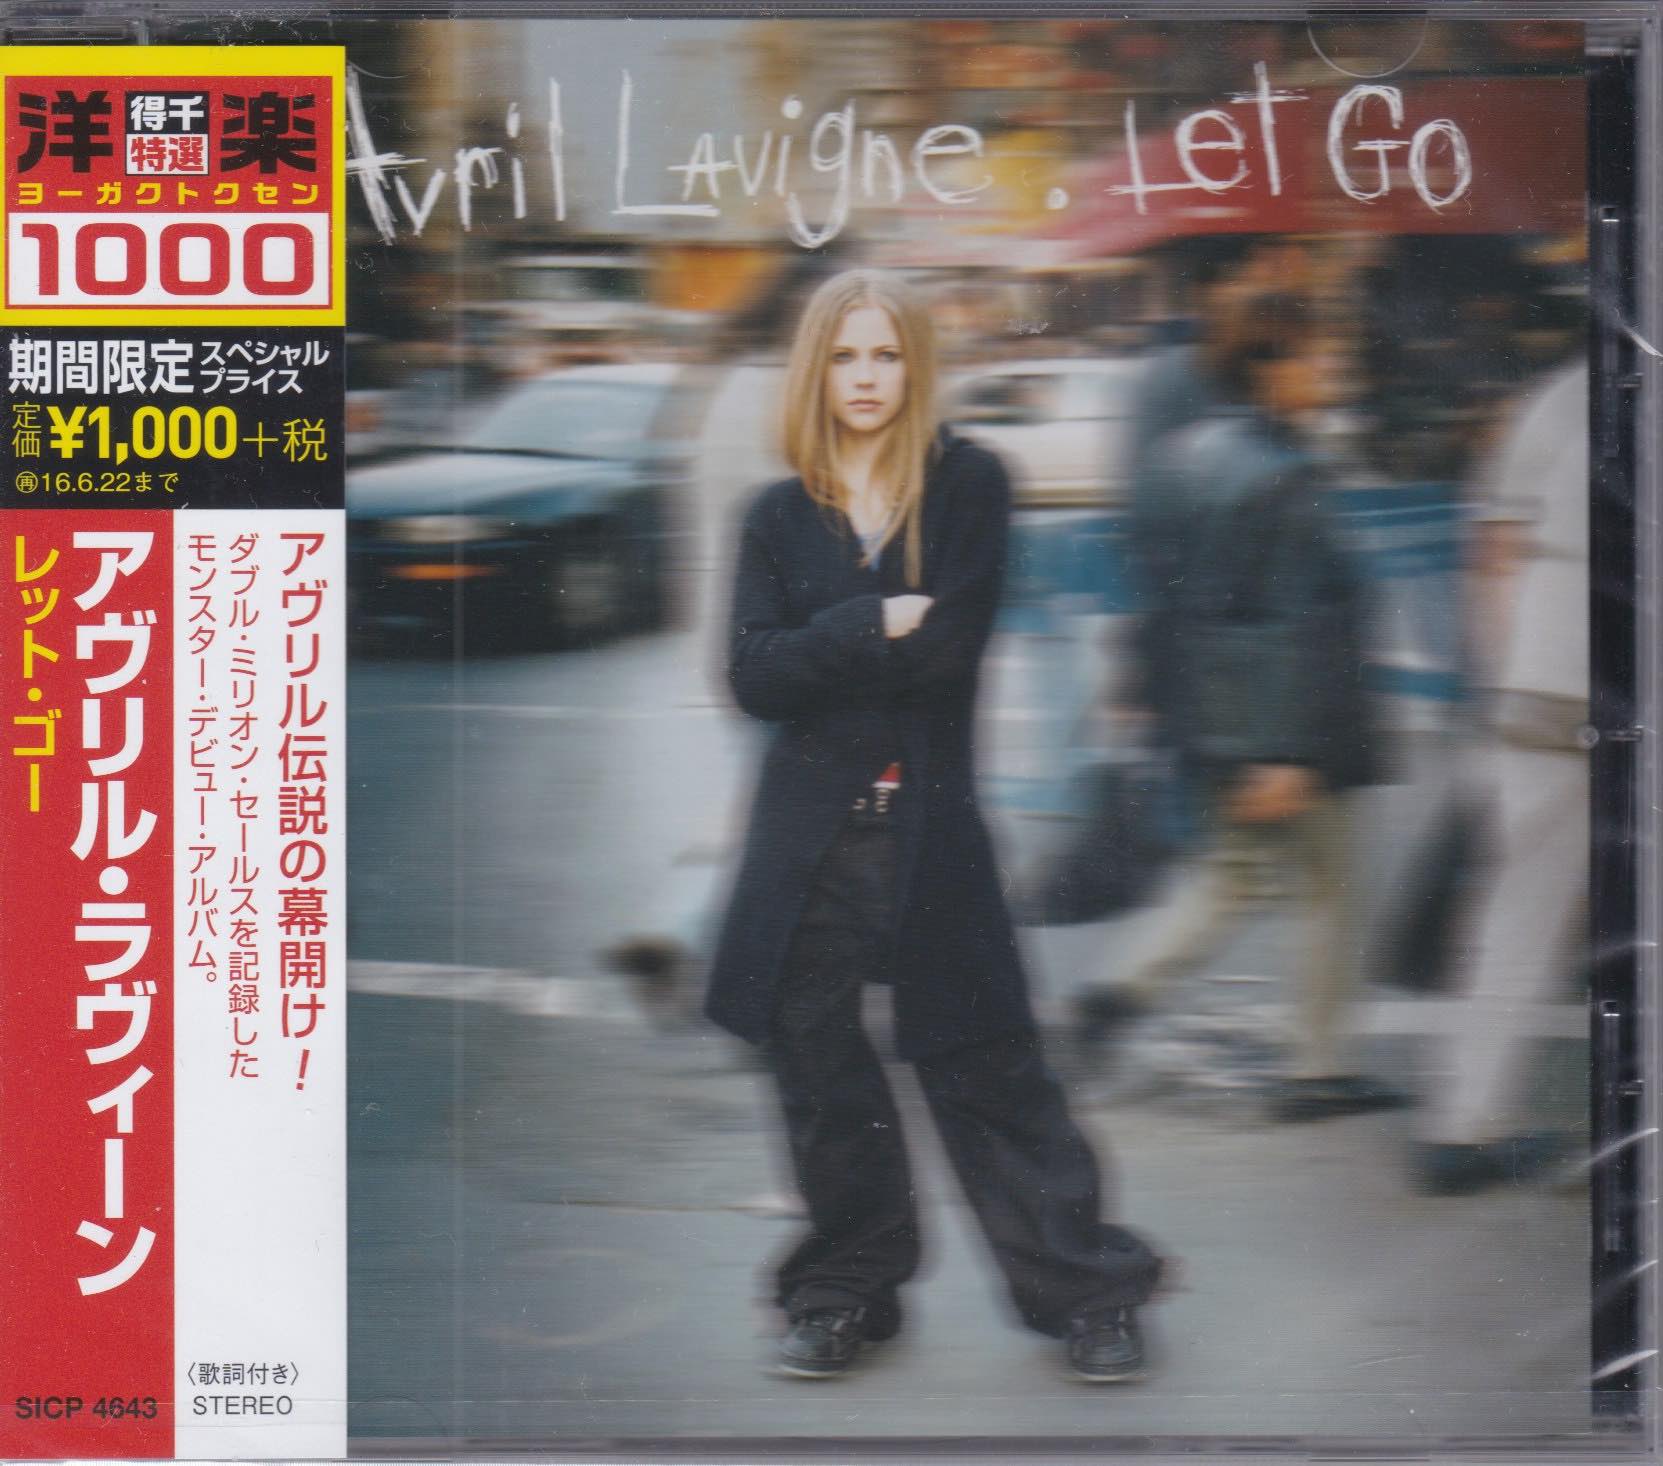 Avril Lavigne ‎– Let Go